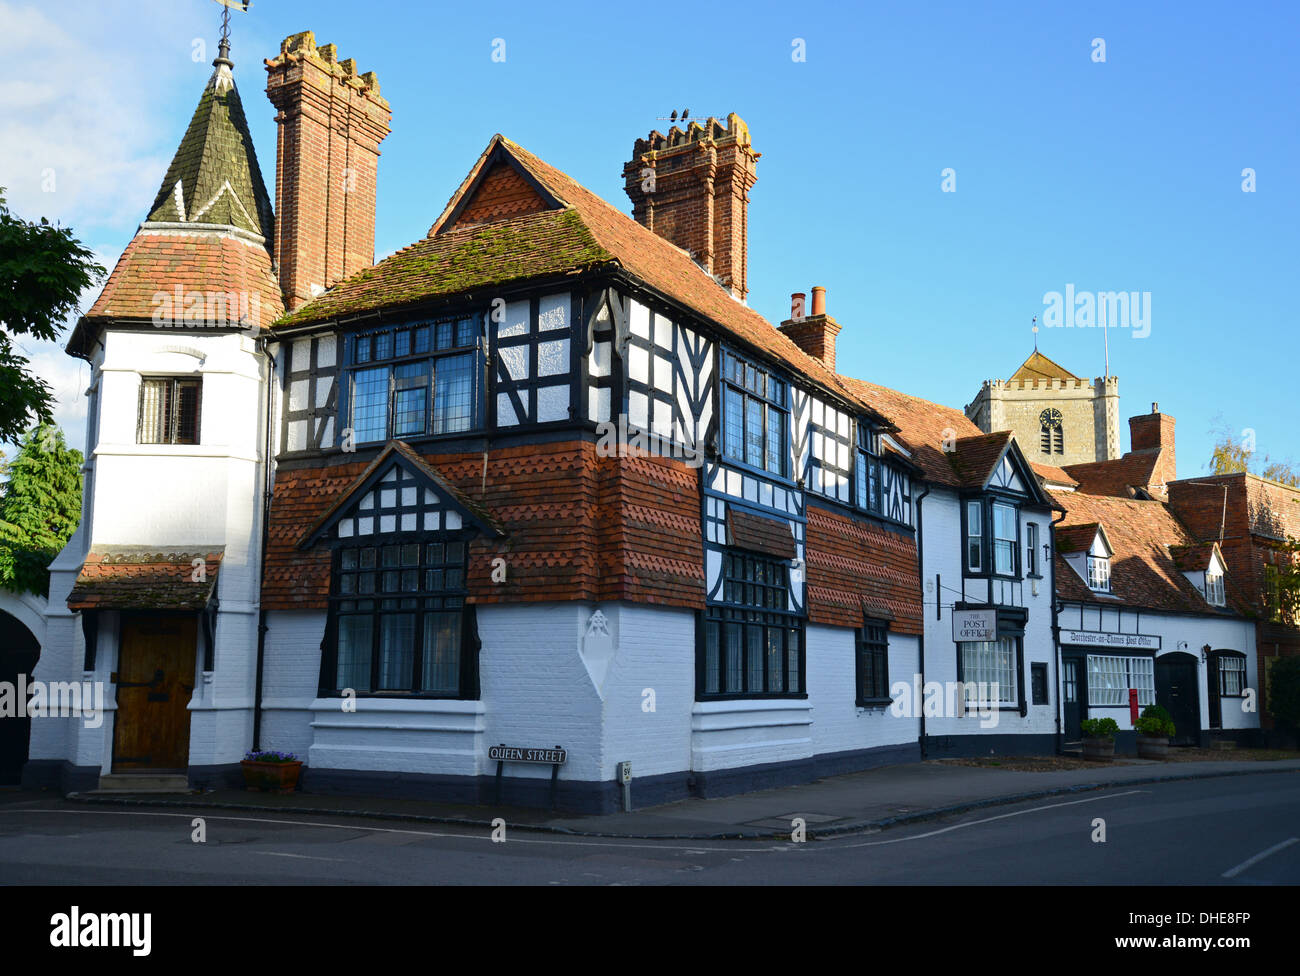 L'ancien bureau de poste et clocher de l'église, High Street, Dorchester-on-Thames, Oxfordshire, Angleterre, Royaume-Uni Banque D'Images